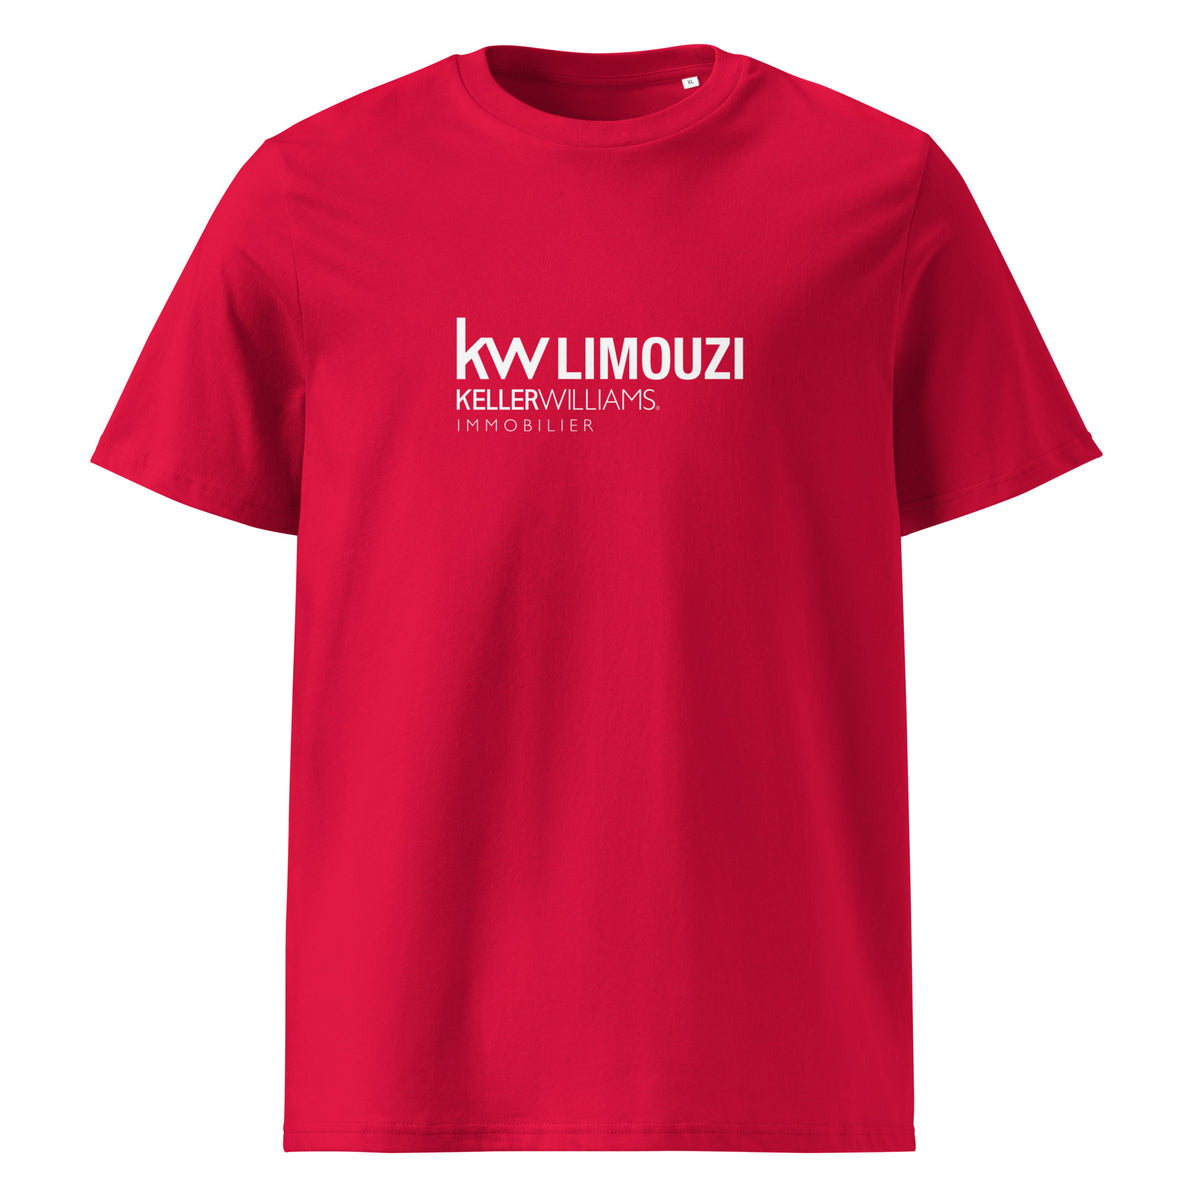 T-shirt Unisexe - kw Limouzi